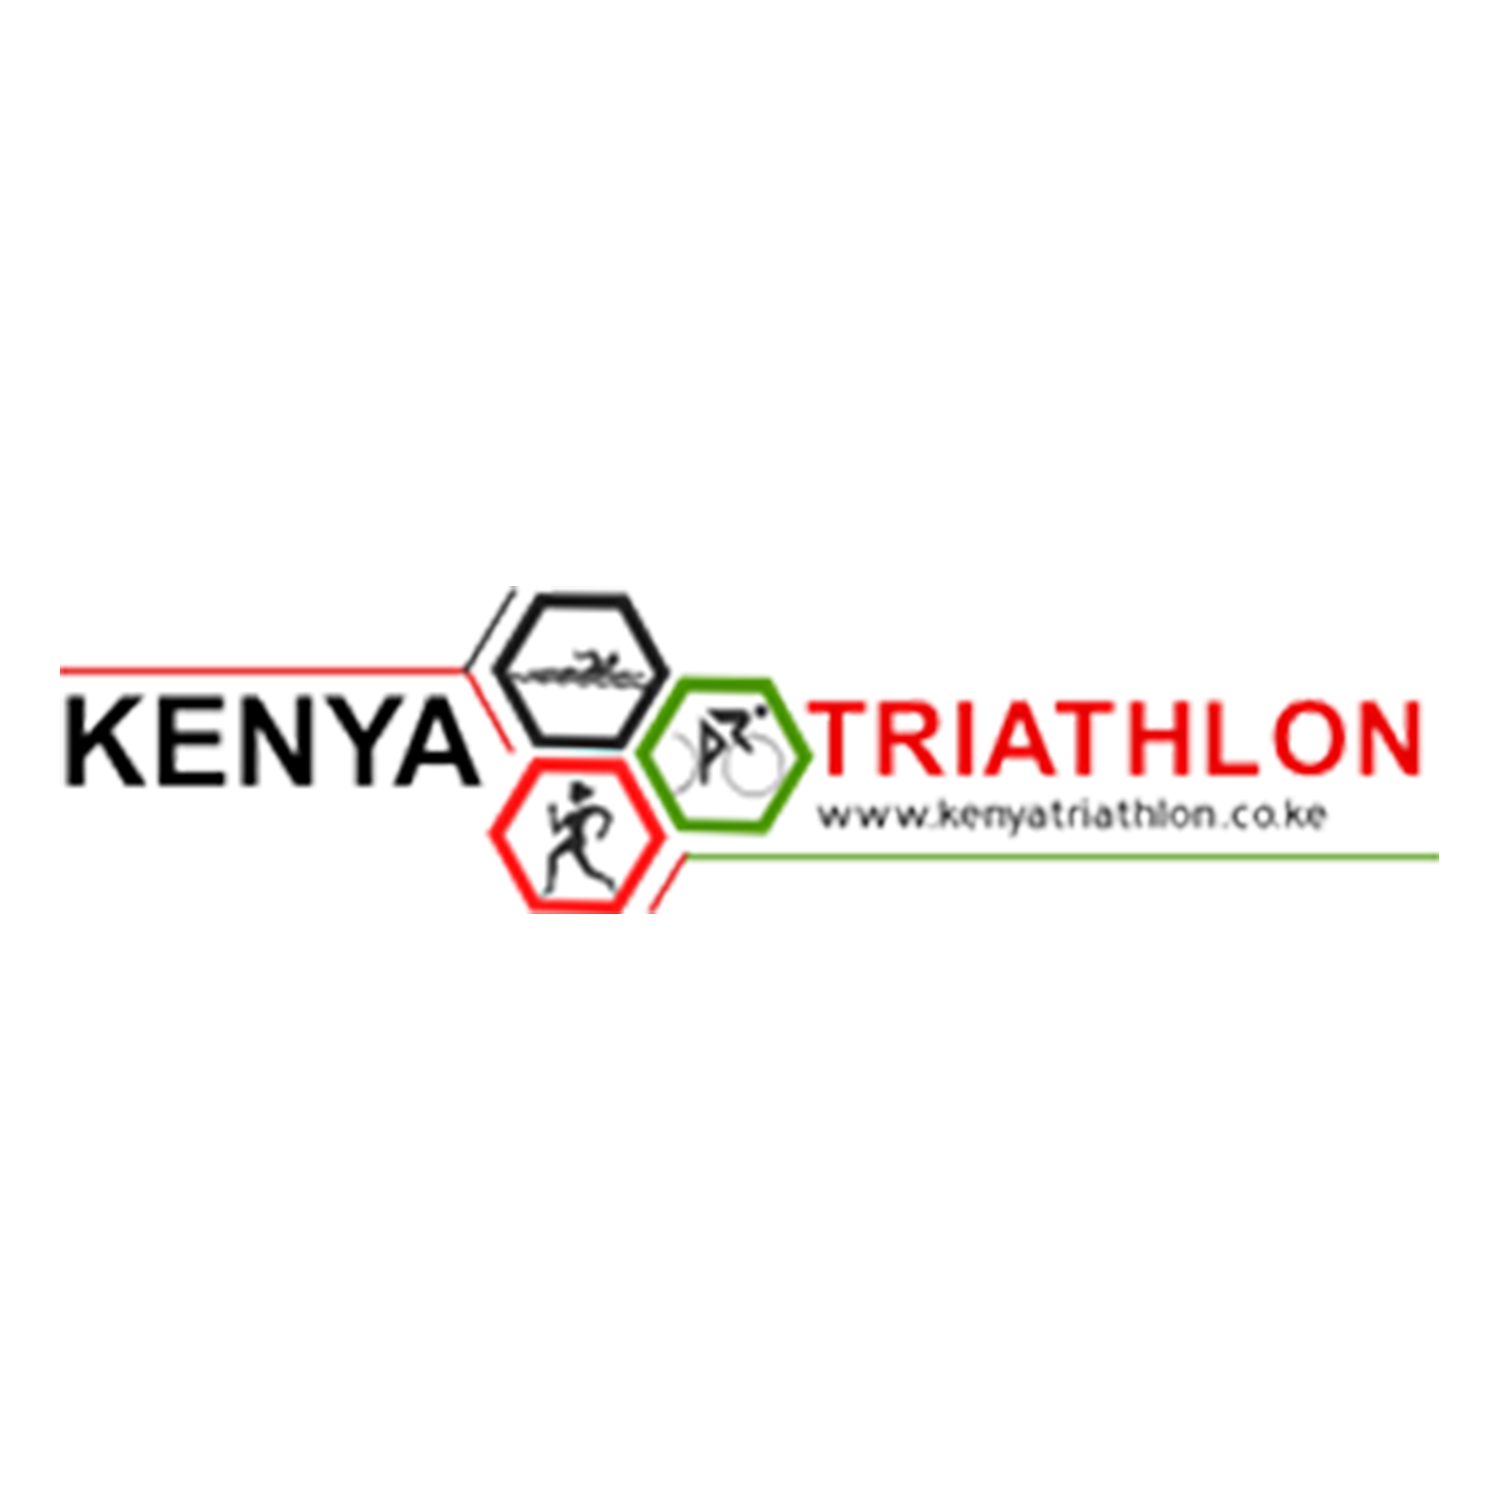 Kenya Triathlon